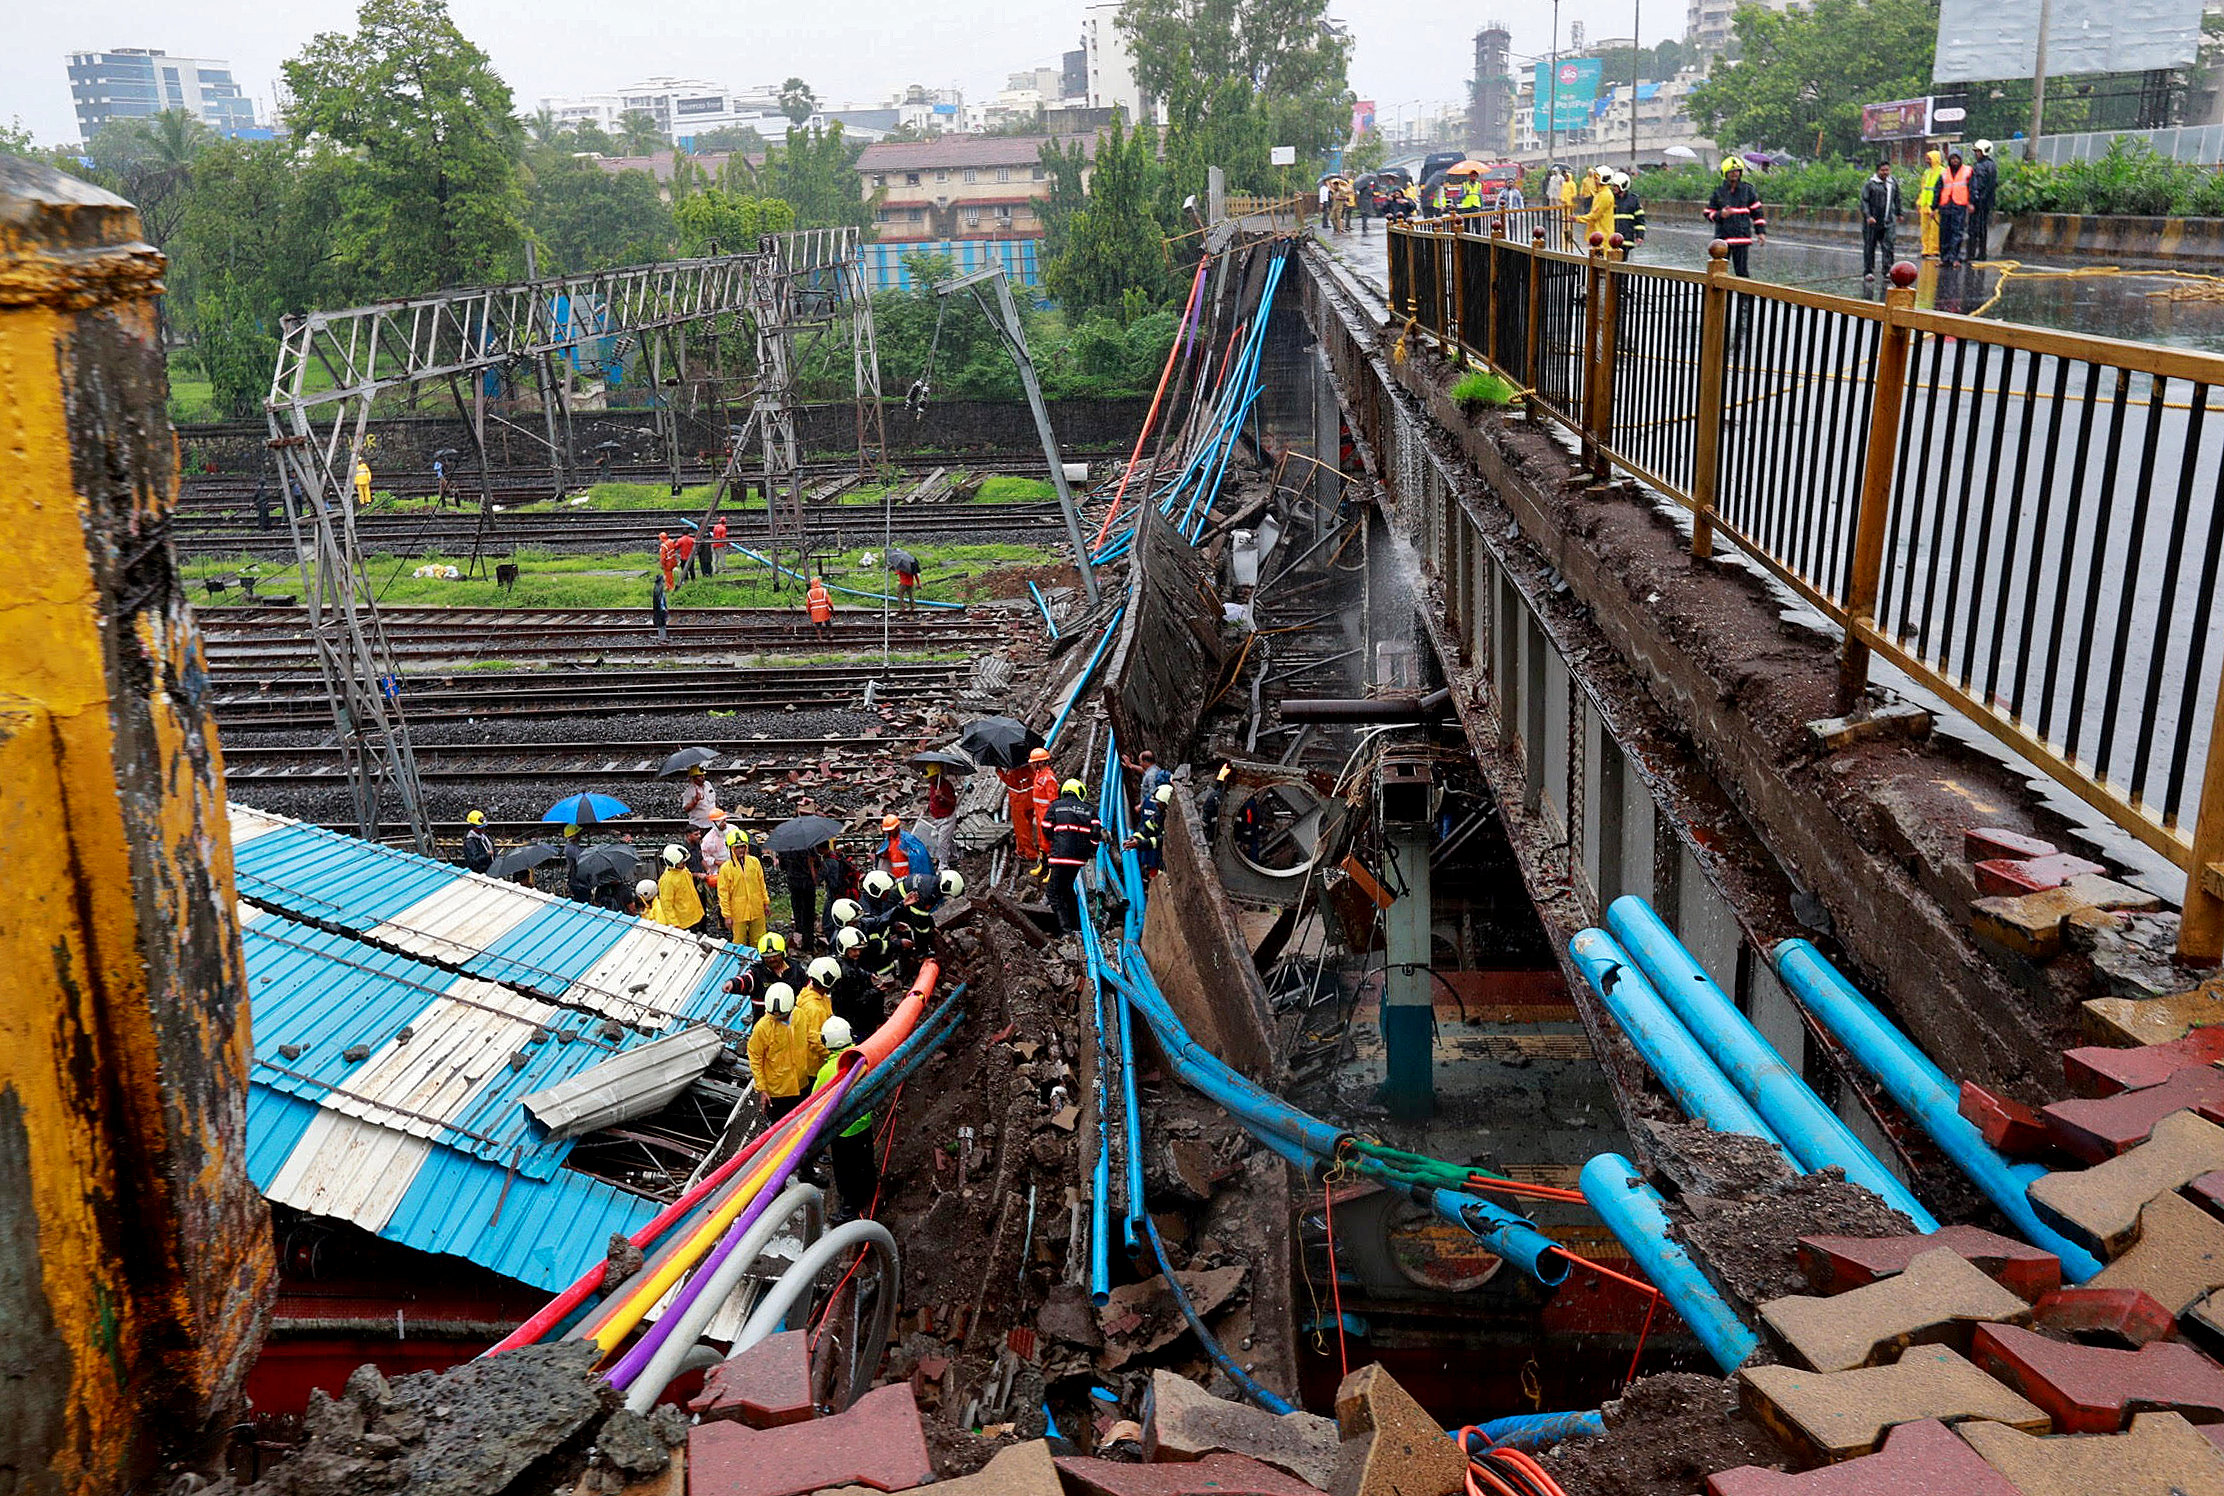 عمال الإنقاذ ينظرون إلى العمل في موقع جسر فوق الأرض الذي انهار فوق خطوط السكك الحديدية. رويترز